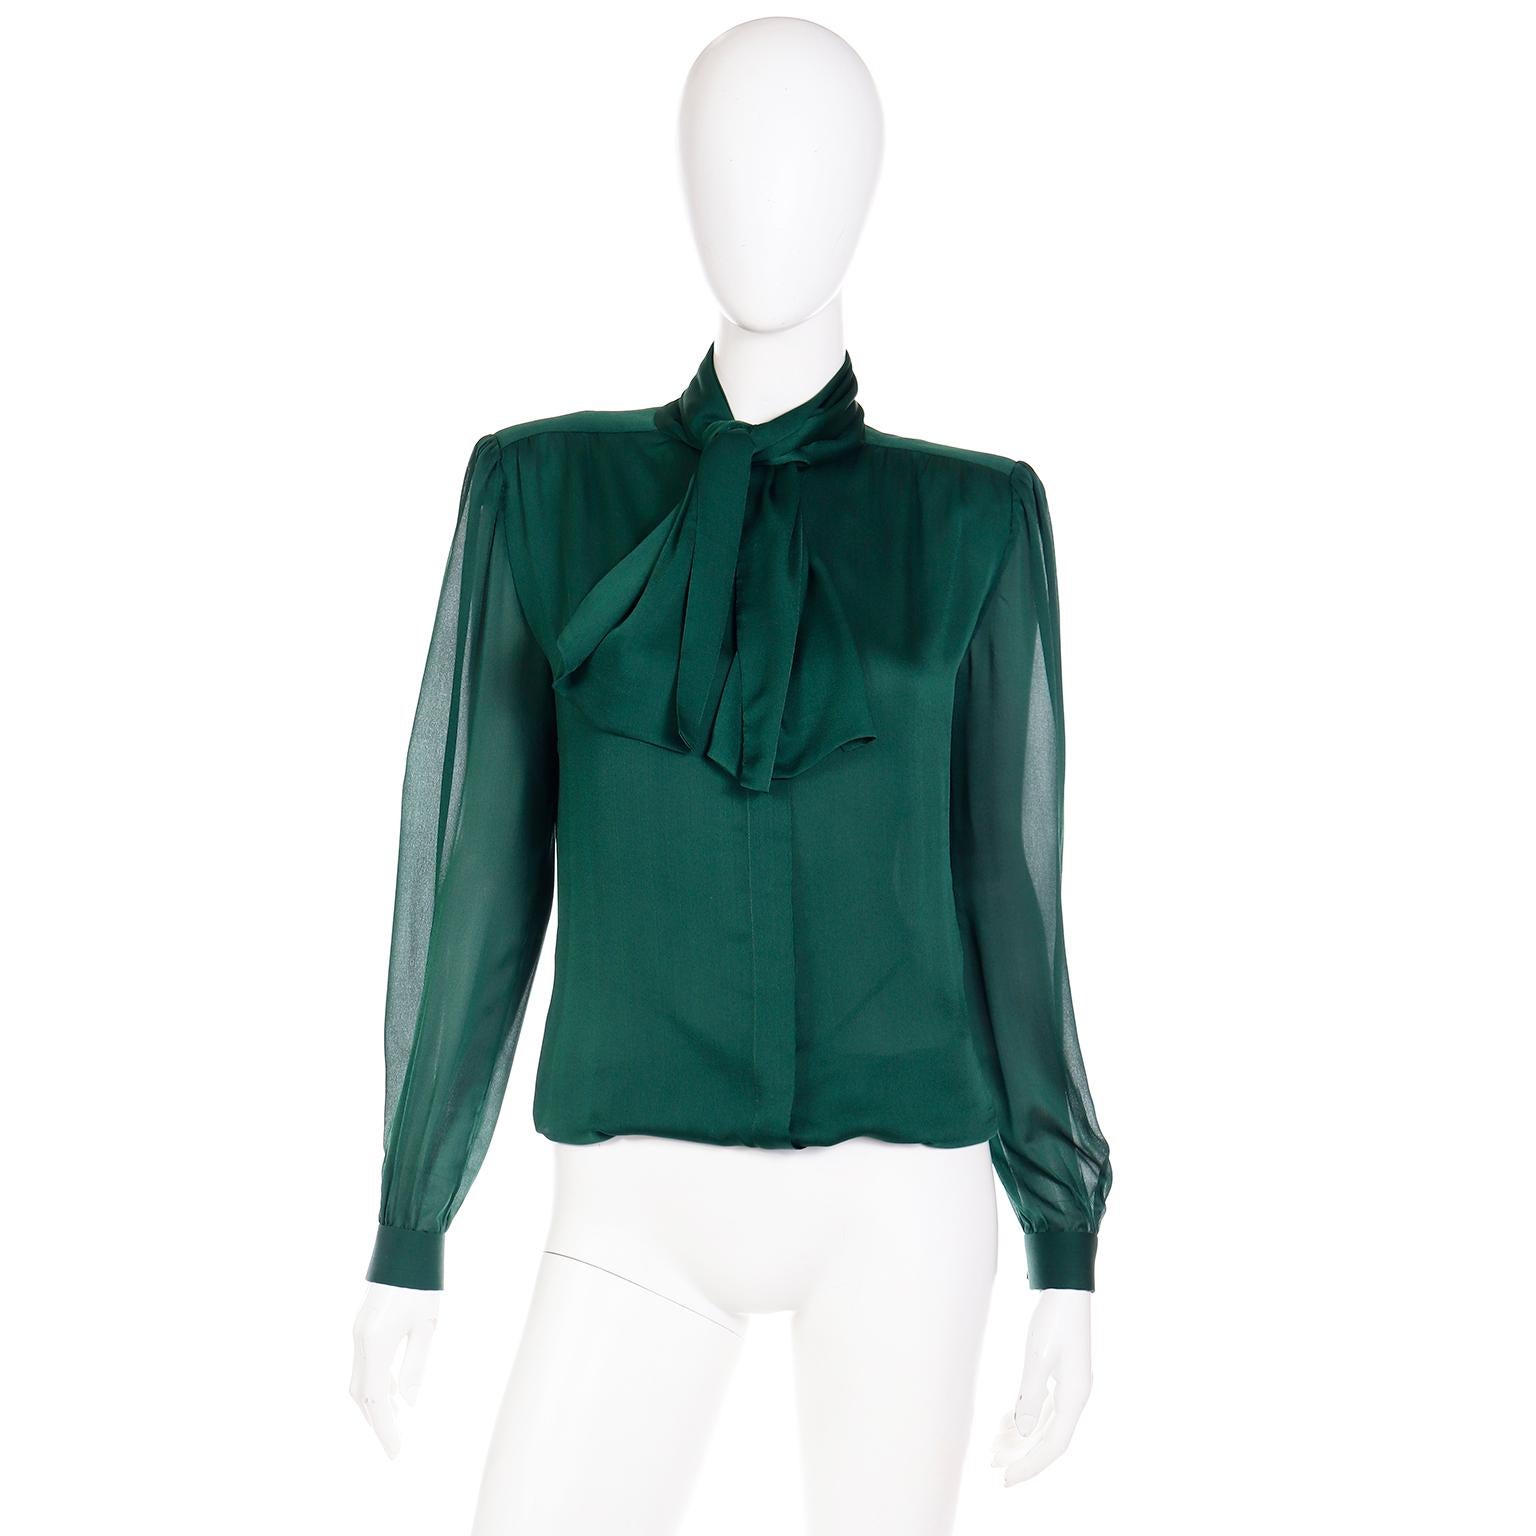 Dies ist eine luxuriöse Seide Vintage Valentino Couture grüne Seidenbluse mit einer beigefügten Schärpe Stil Krawatte, die in einem Knoten oder Schleife gebunden werden kann. Diese schöne Bluse hat eingenähte Schulterpads für eine leichte Struktur,